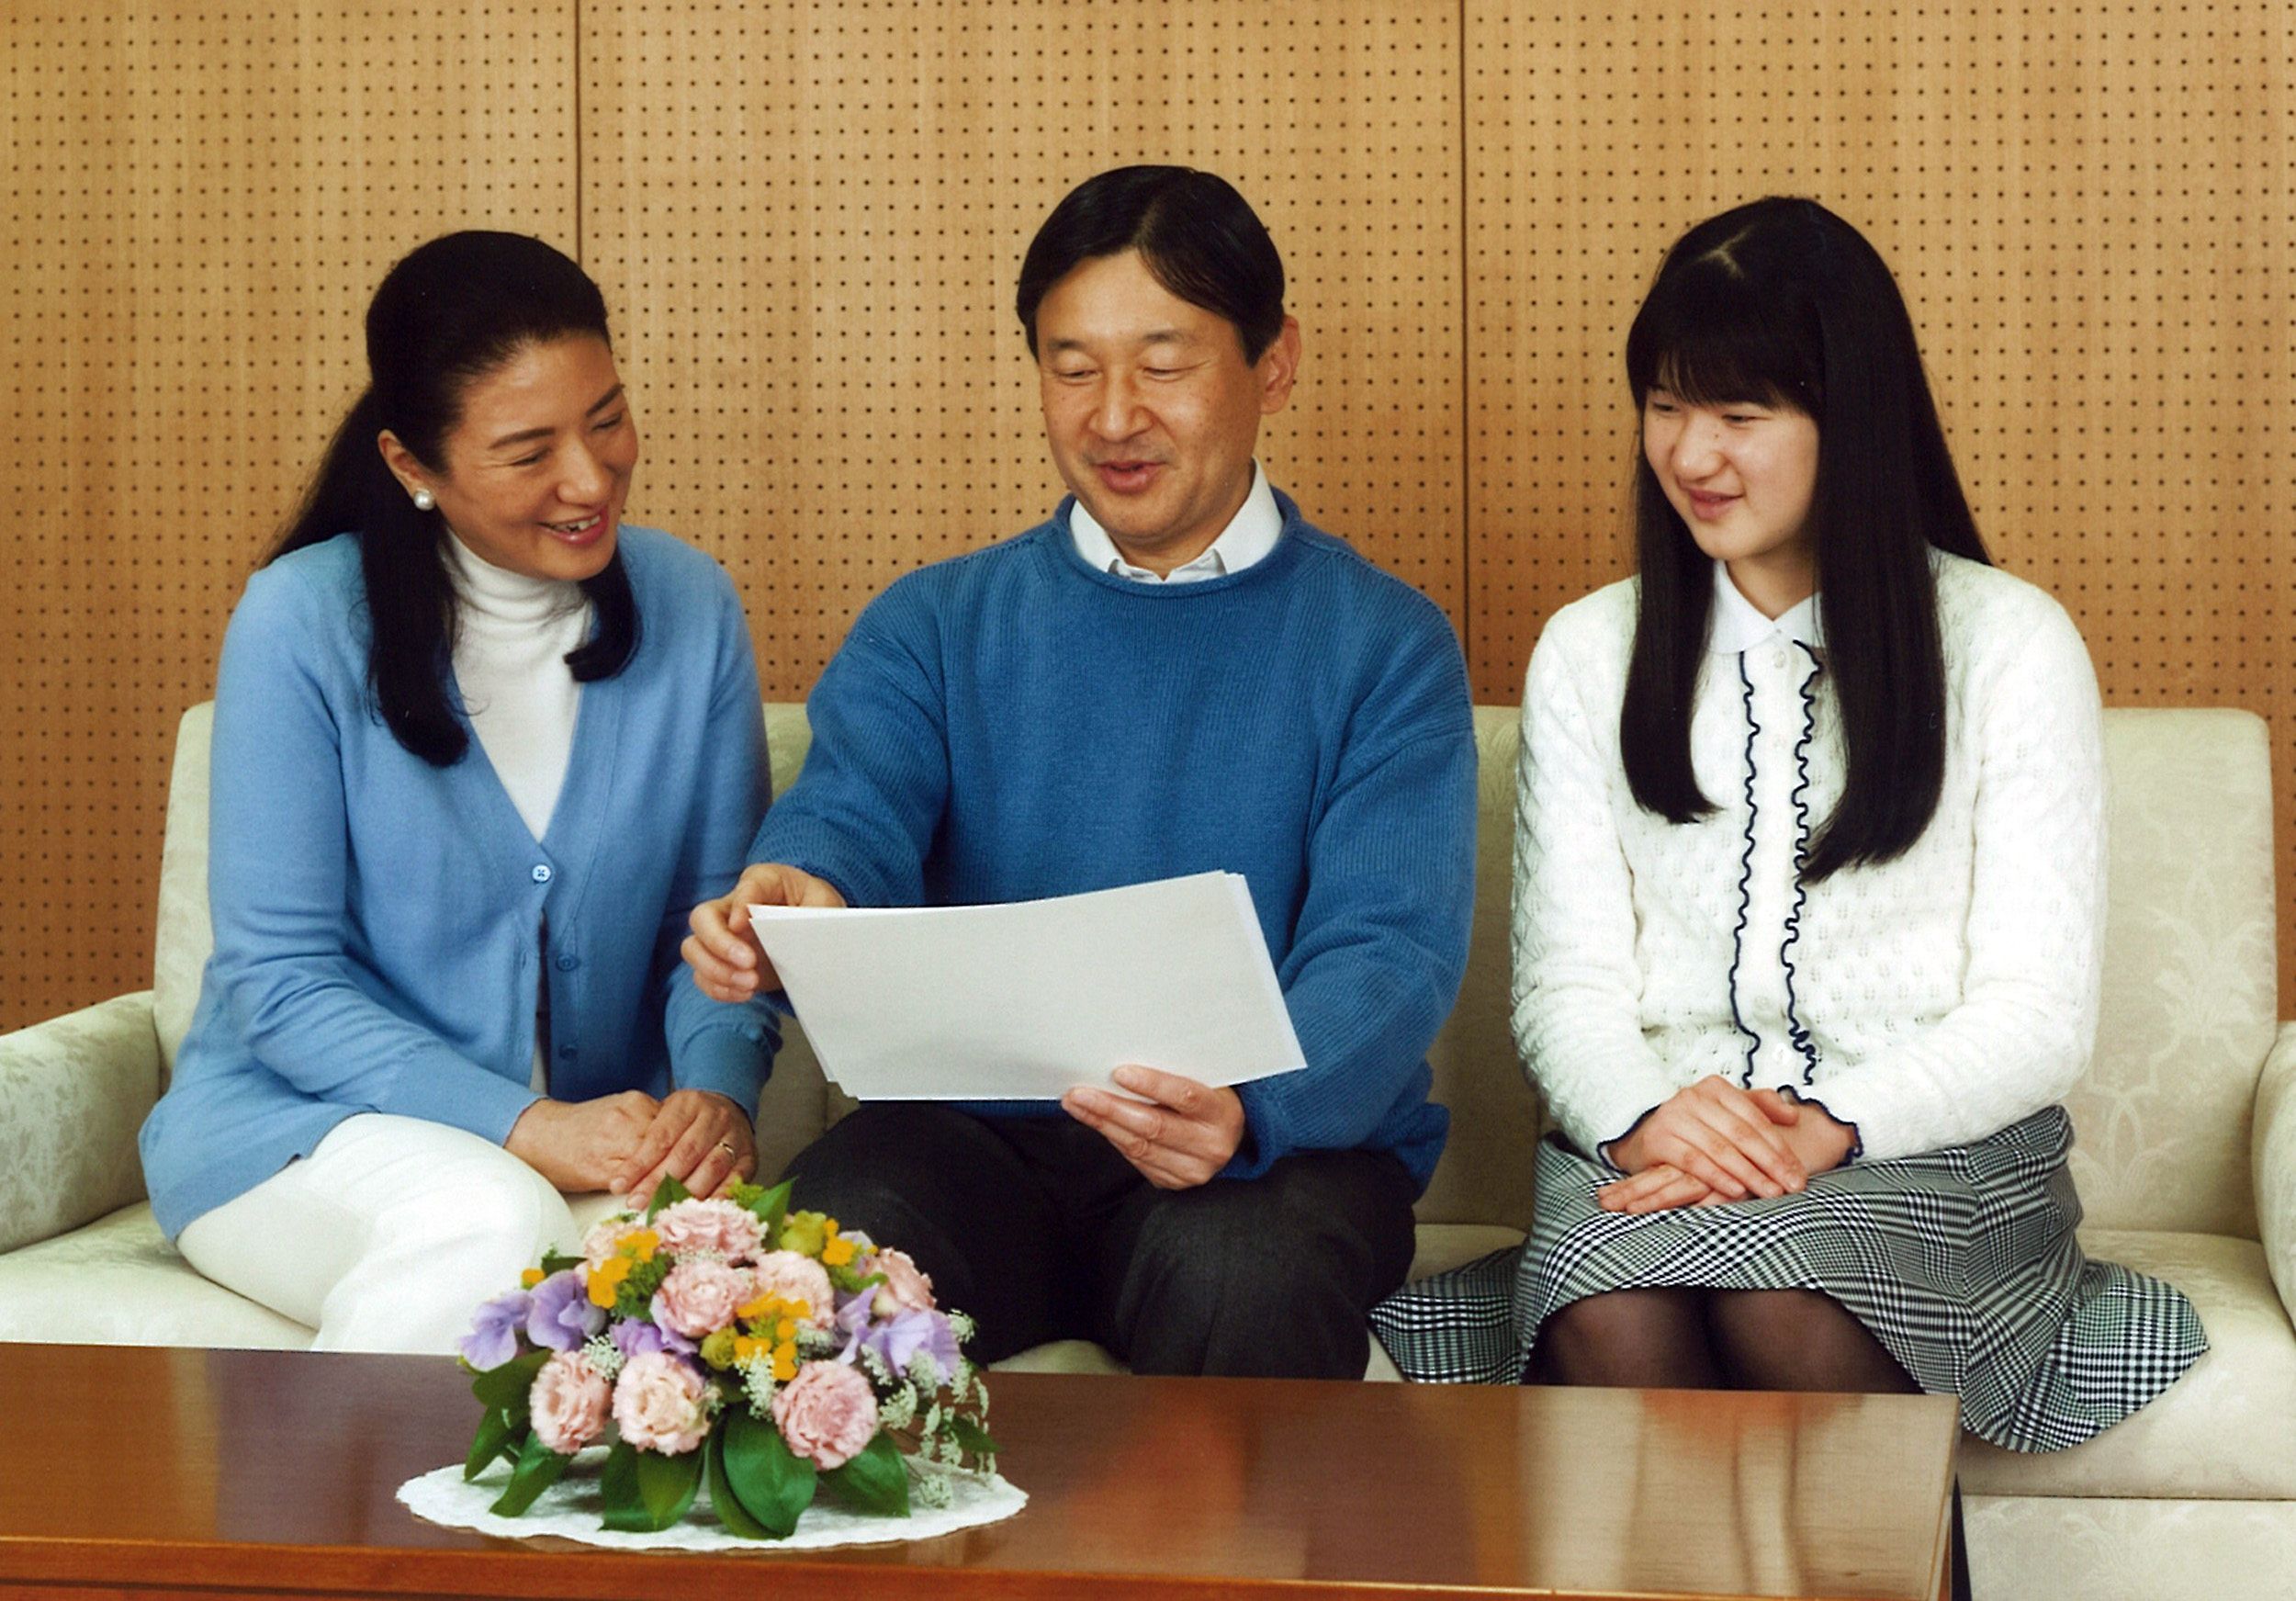 Il principe ereditario Naruhito, con la moglie Masako e la figlia Akio